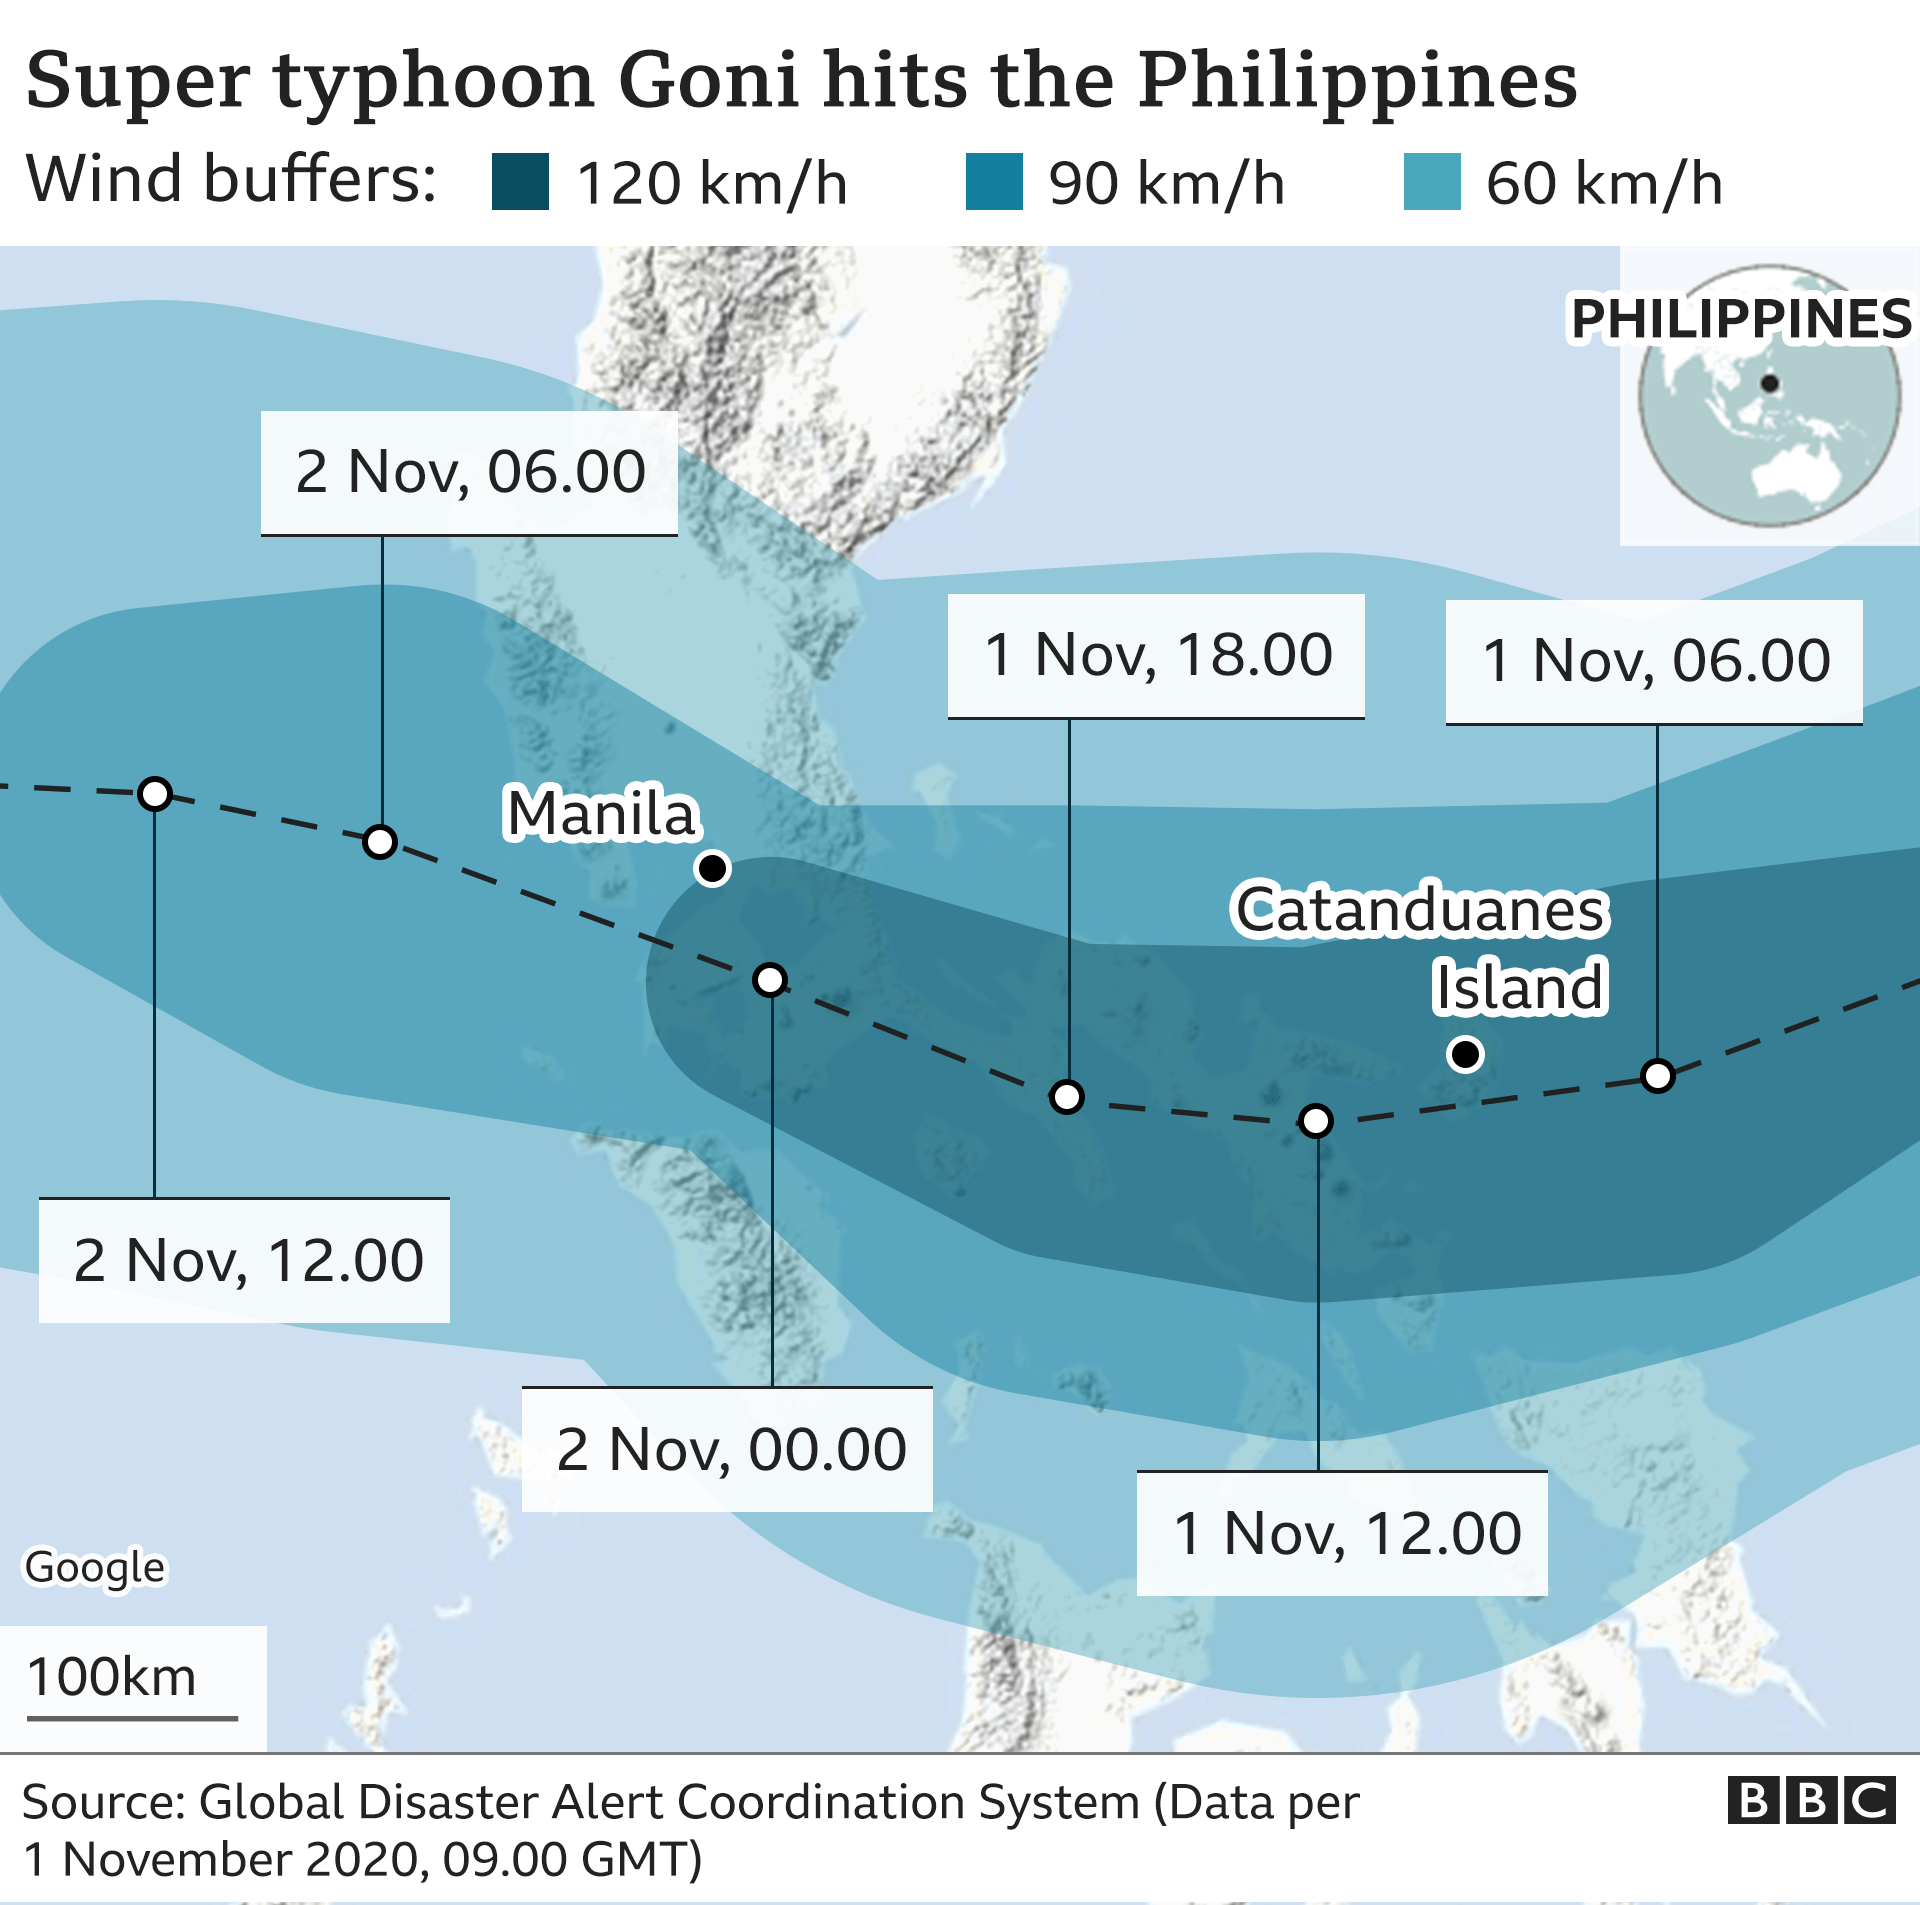 Đảo Catanduanes là nơi bị ảnh hưởng bởi siêu bão Goni tại Philippines. Ảnh: BBC.